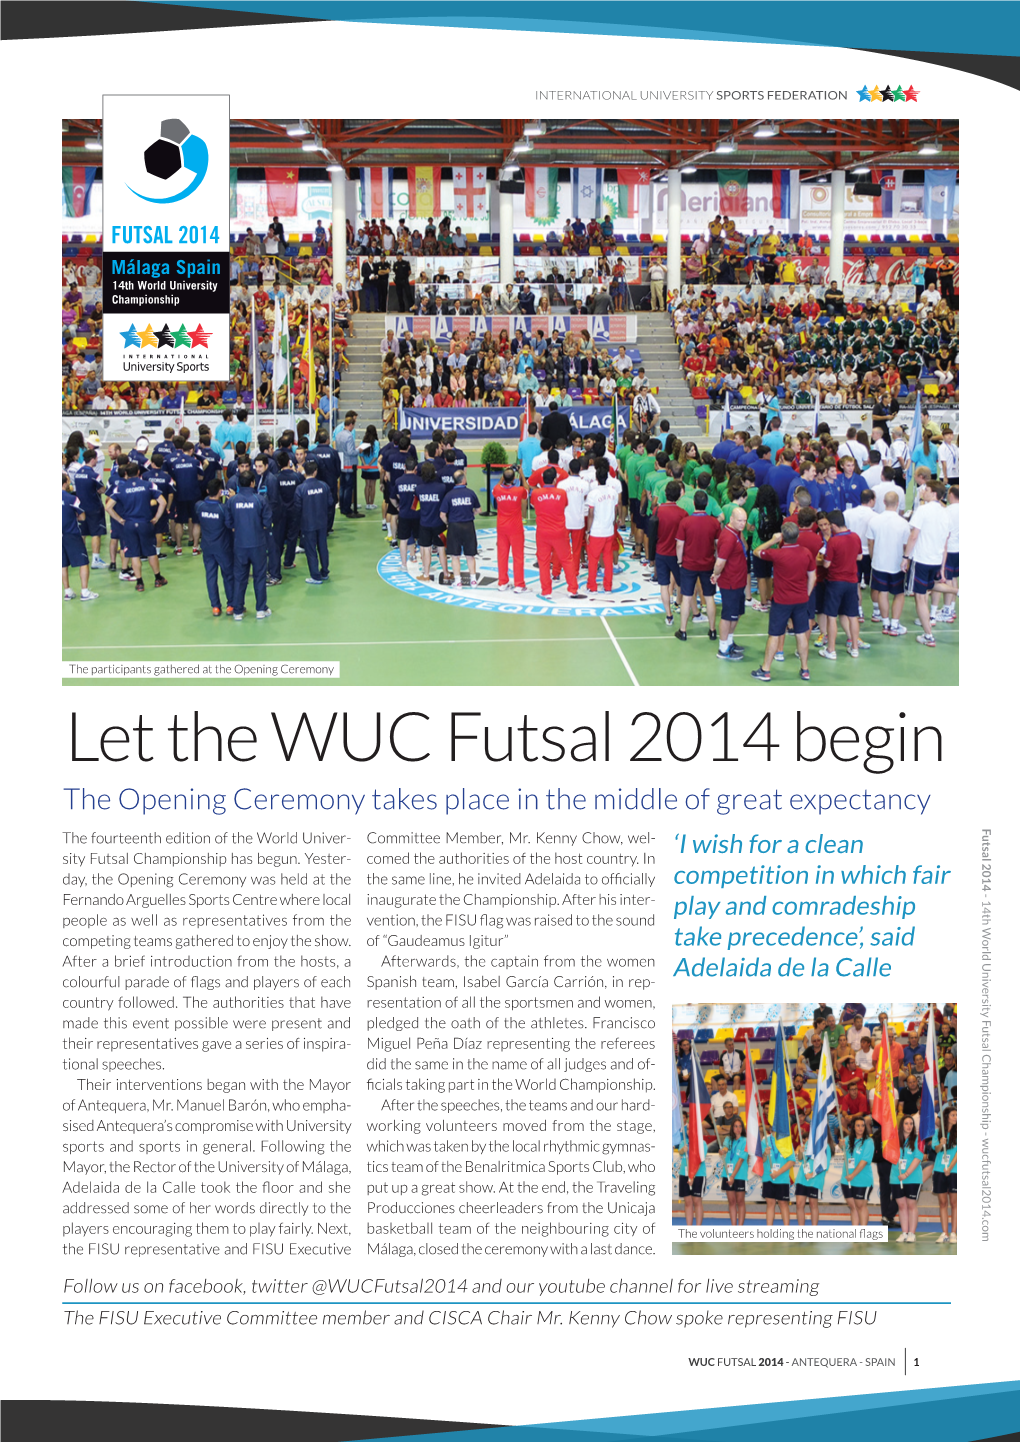 Let the Wuc Futsal 2014 Begin